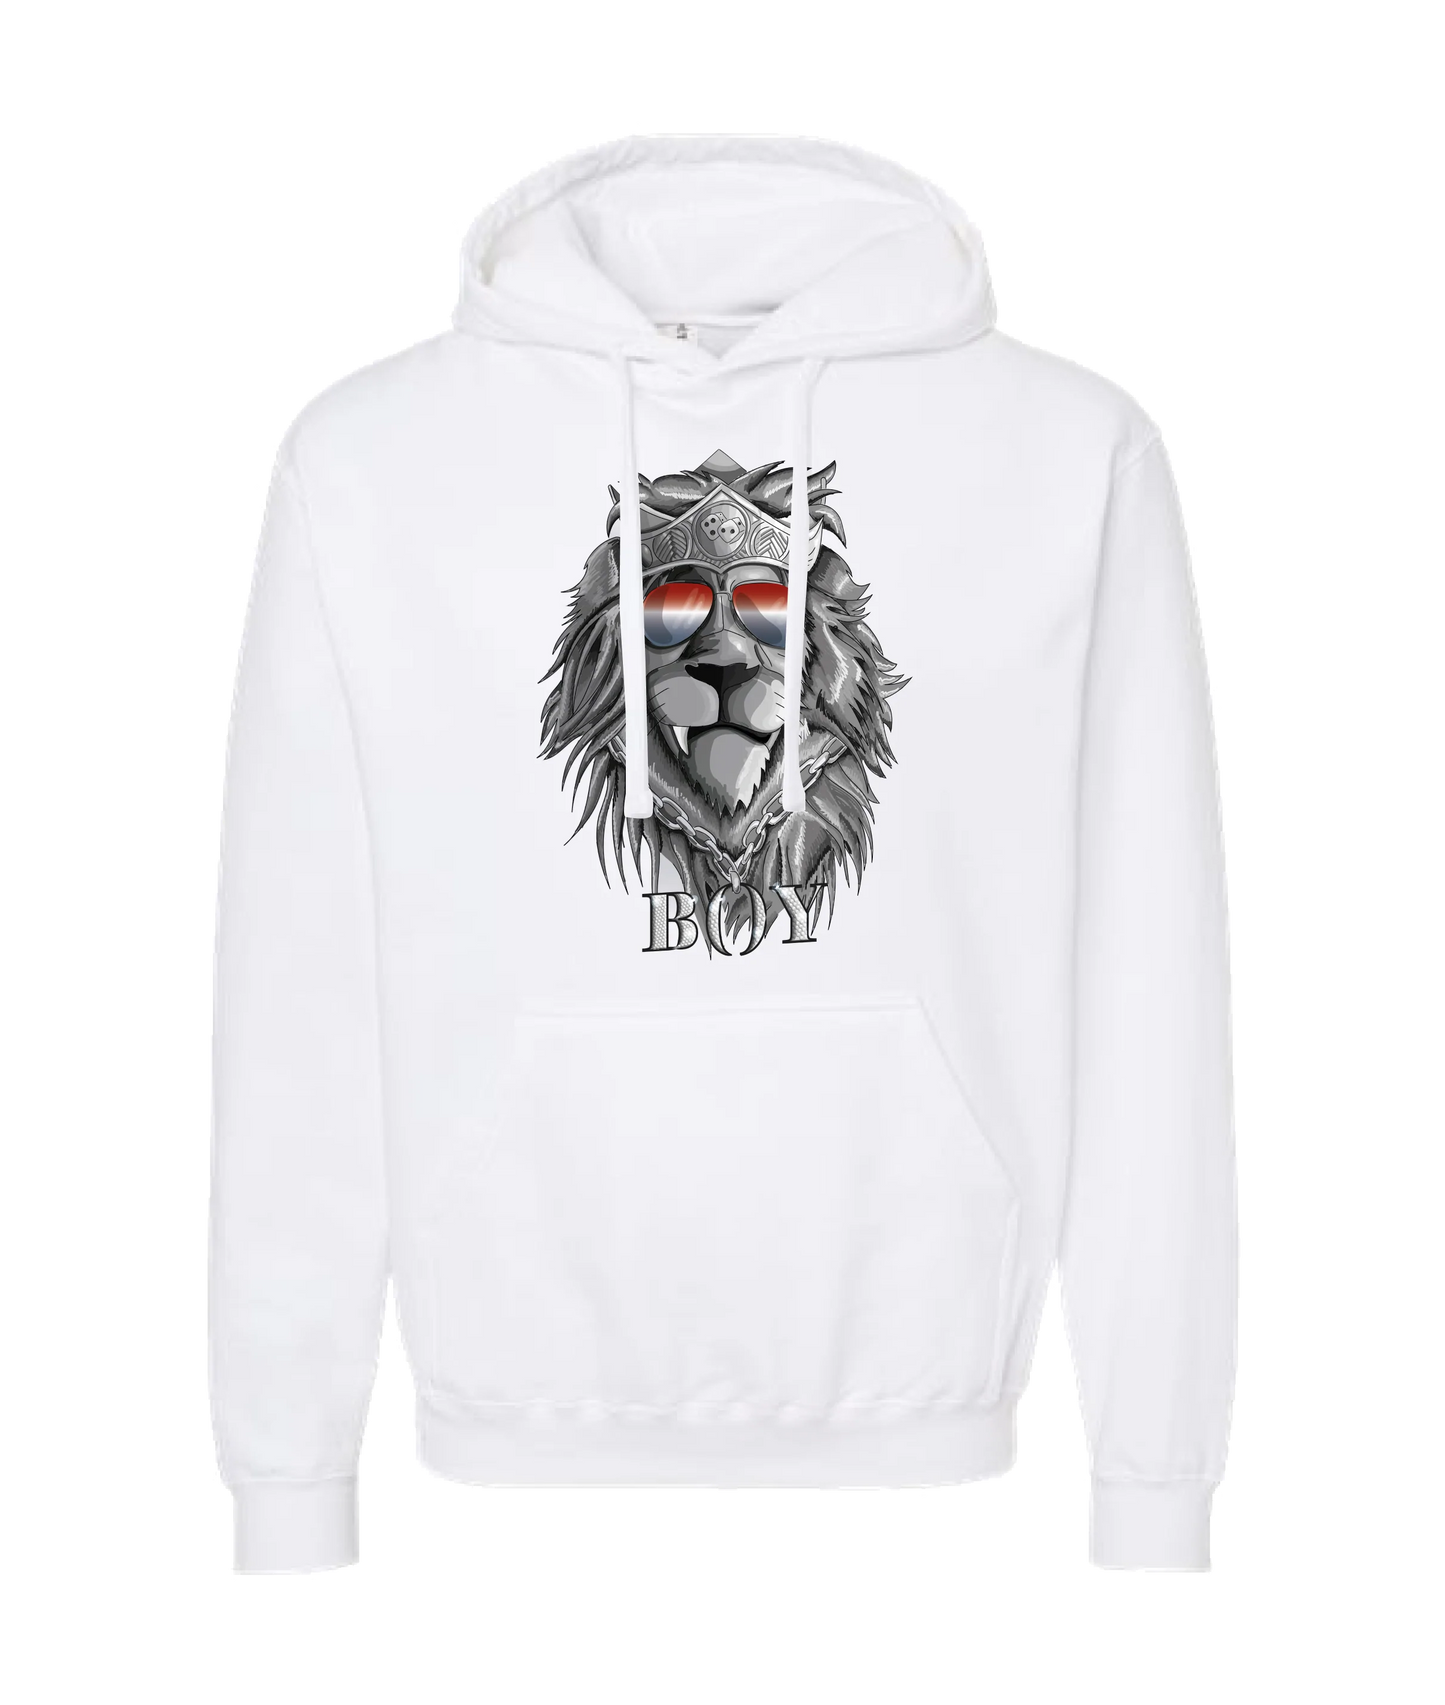 King Julgah - Lion - White Hoodie